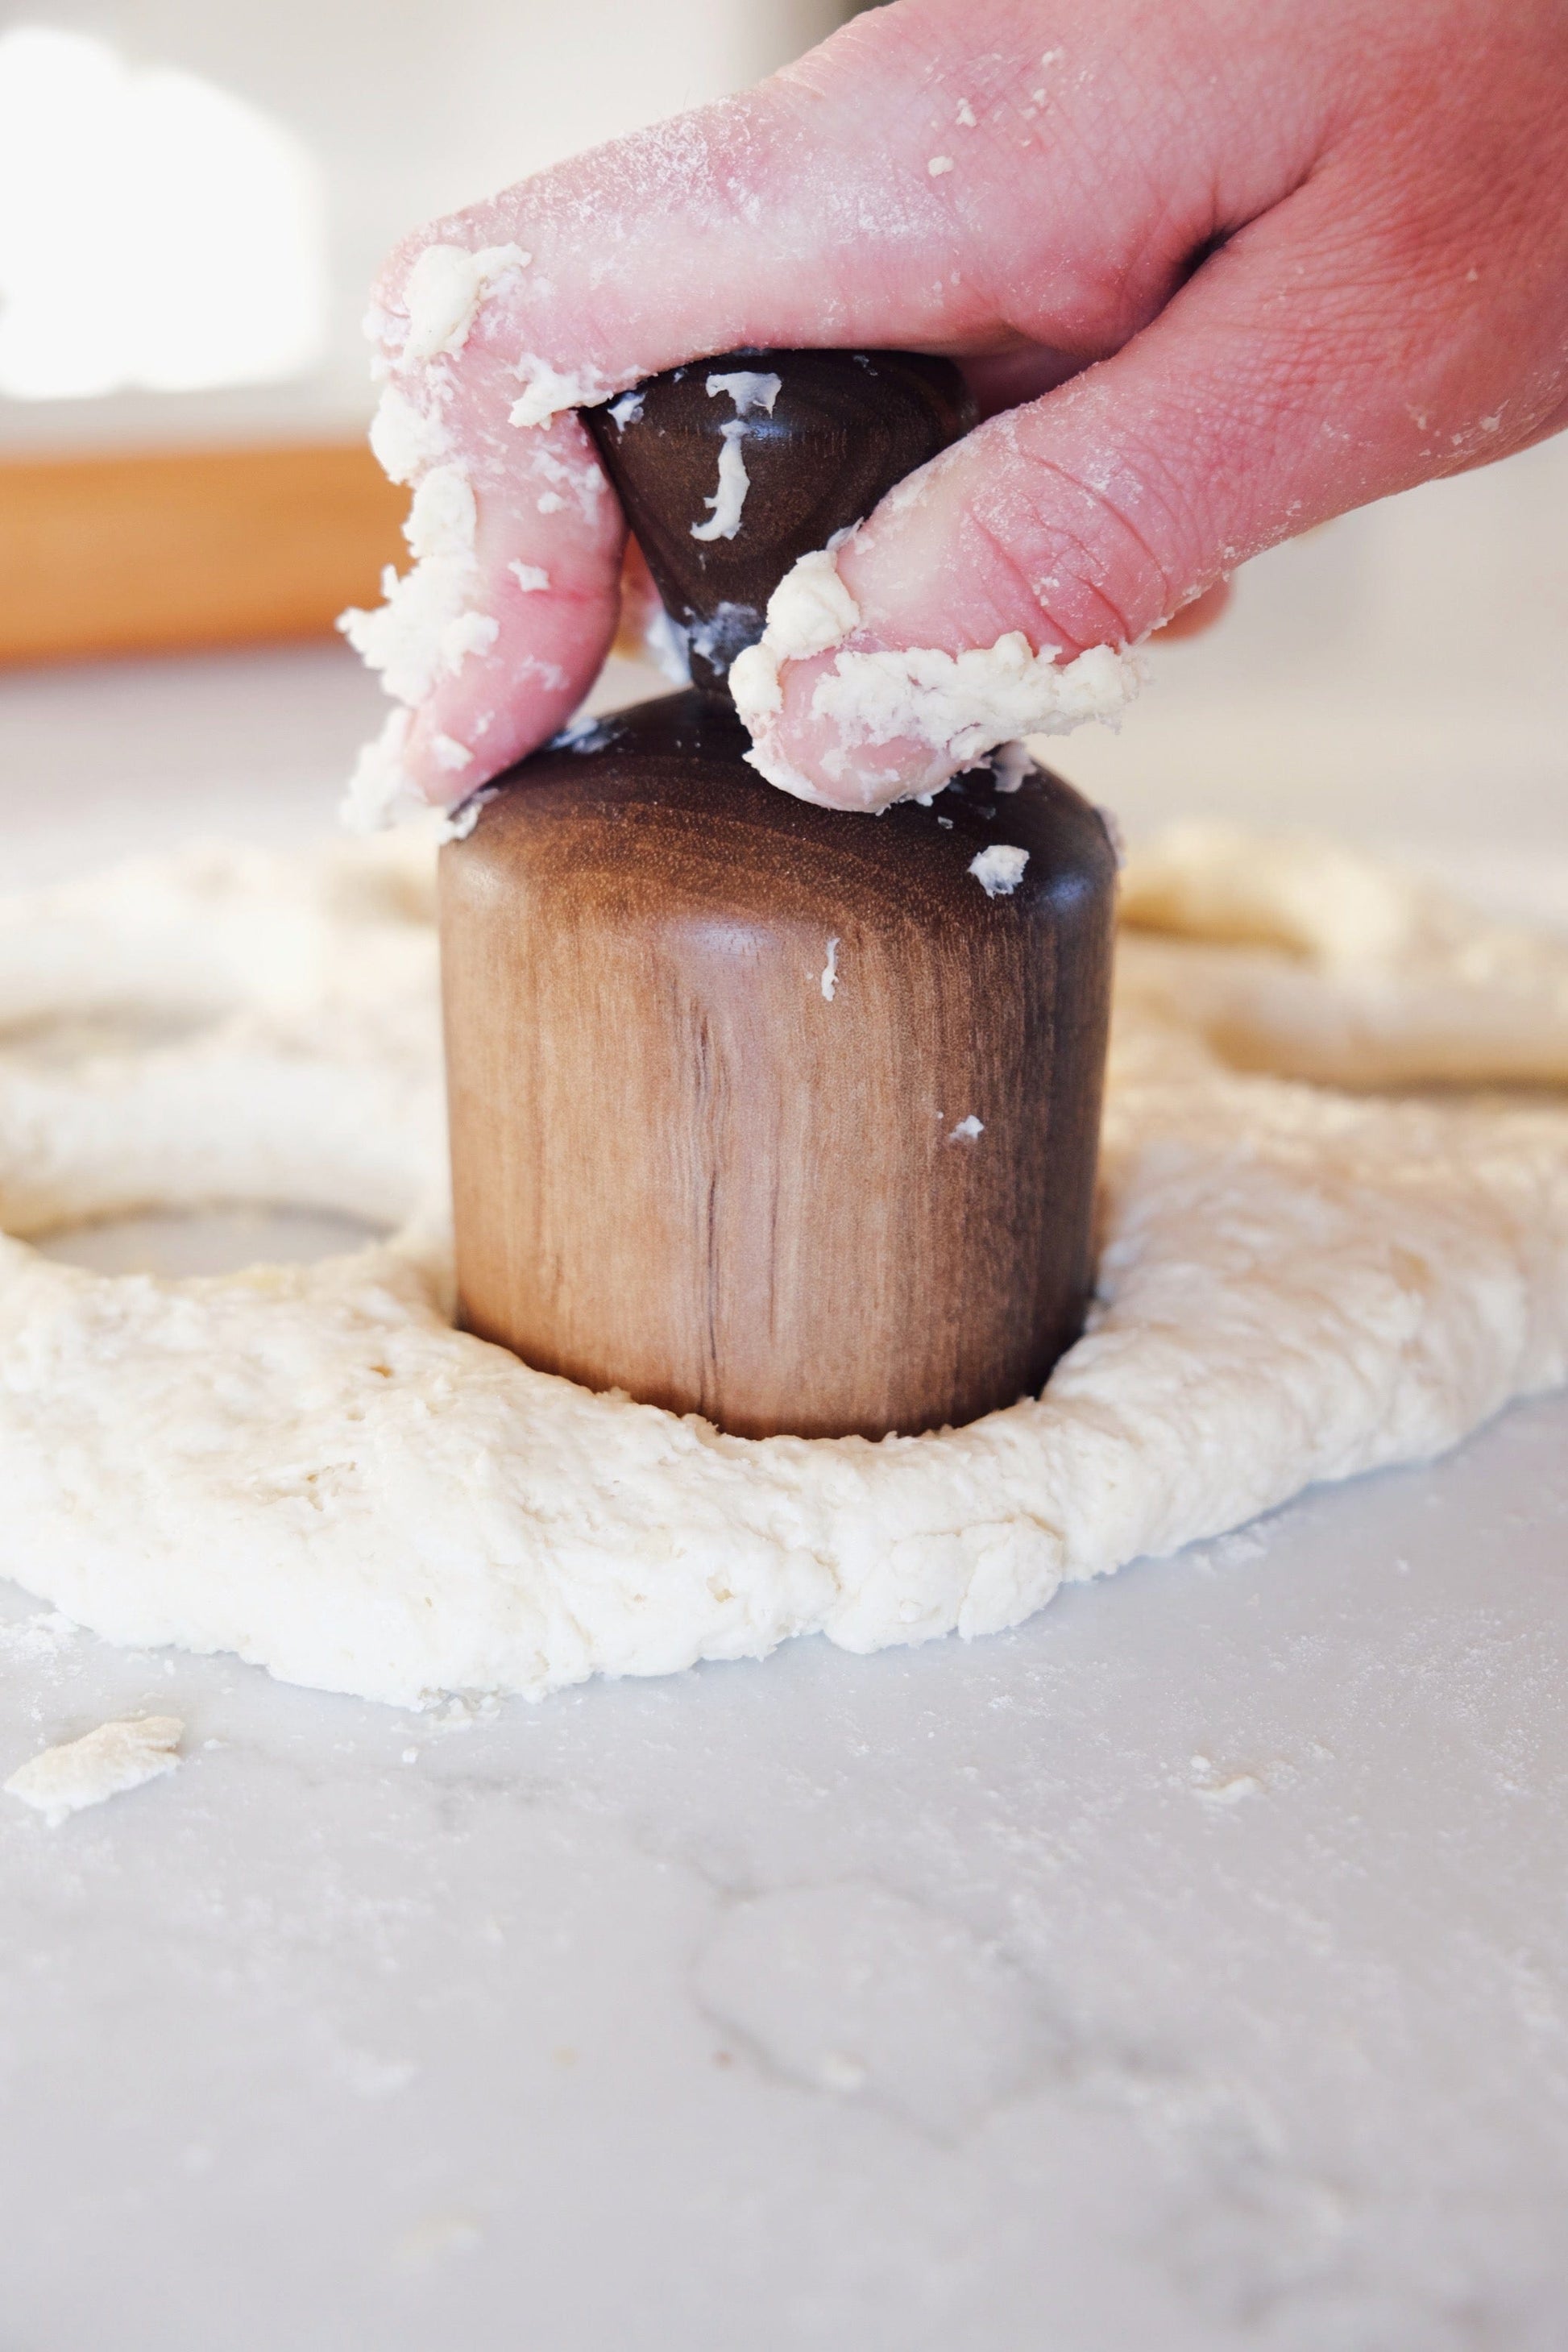 Walnut biscuit cutter cutting dough